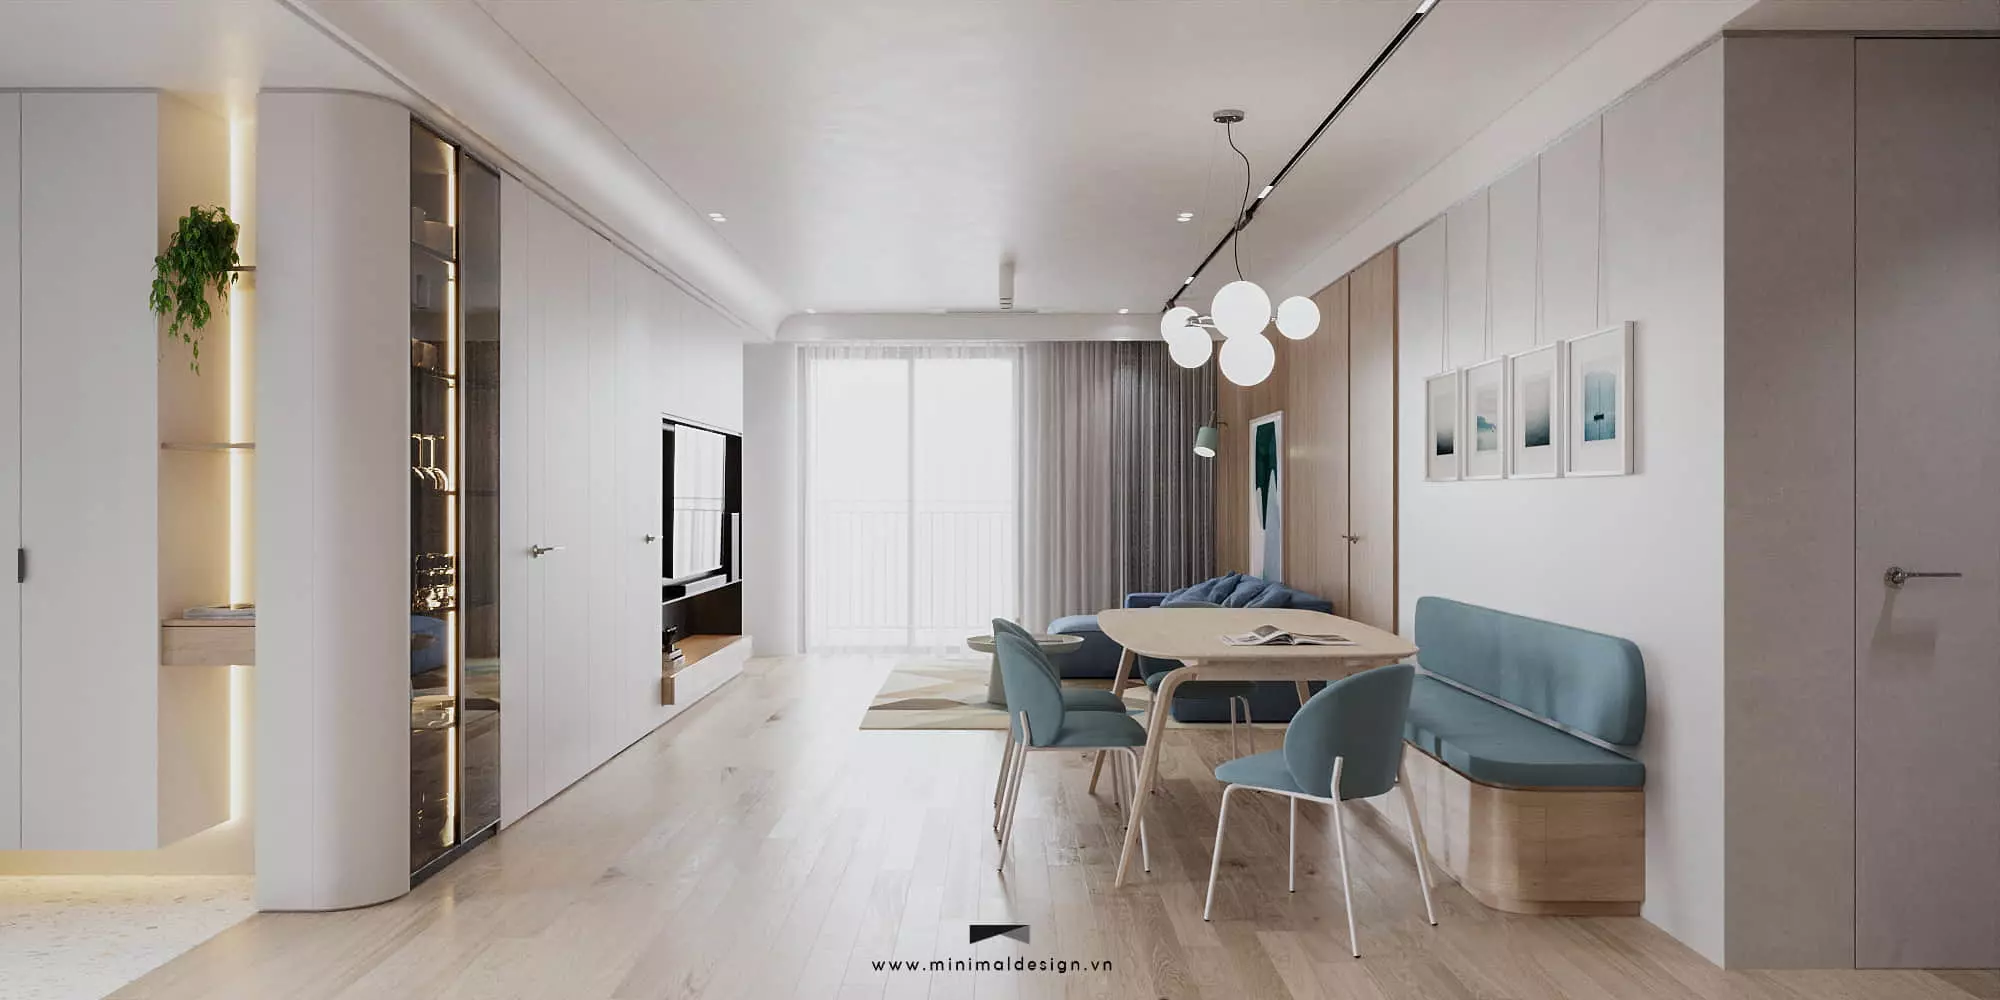 Phong thủy trong thiết kế nội thất căn hộ và những lưu ý cần phải biết để thiết kế một không gian sống đầy năng lượng tích cực đến gia chủ.